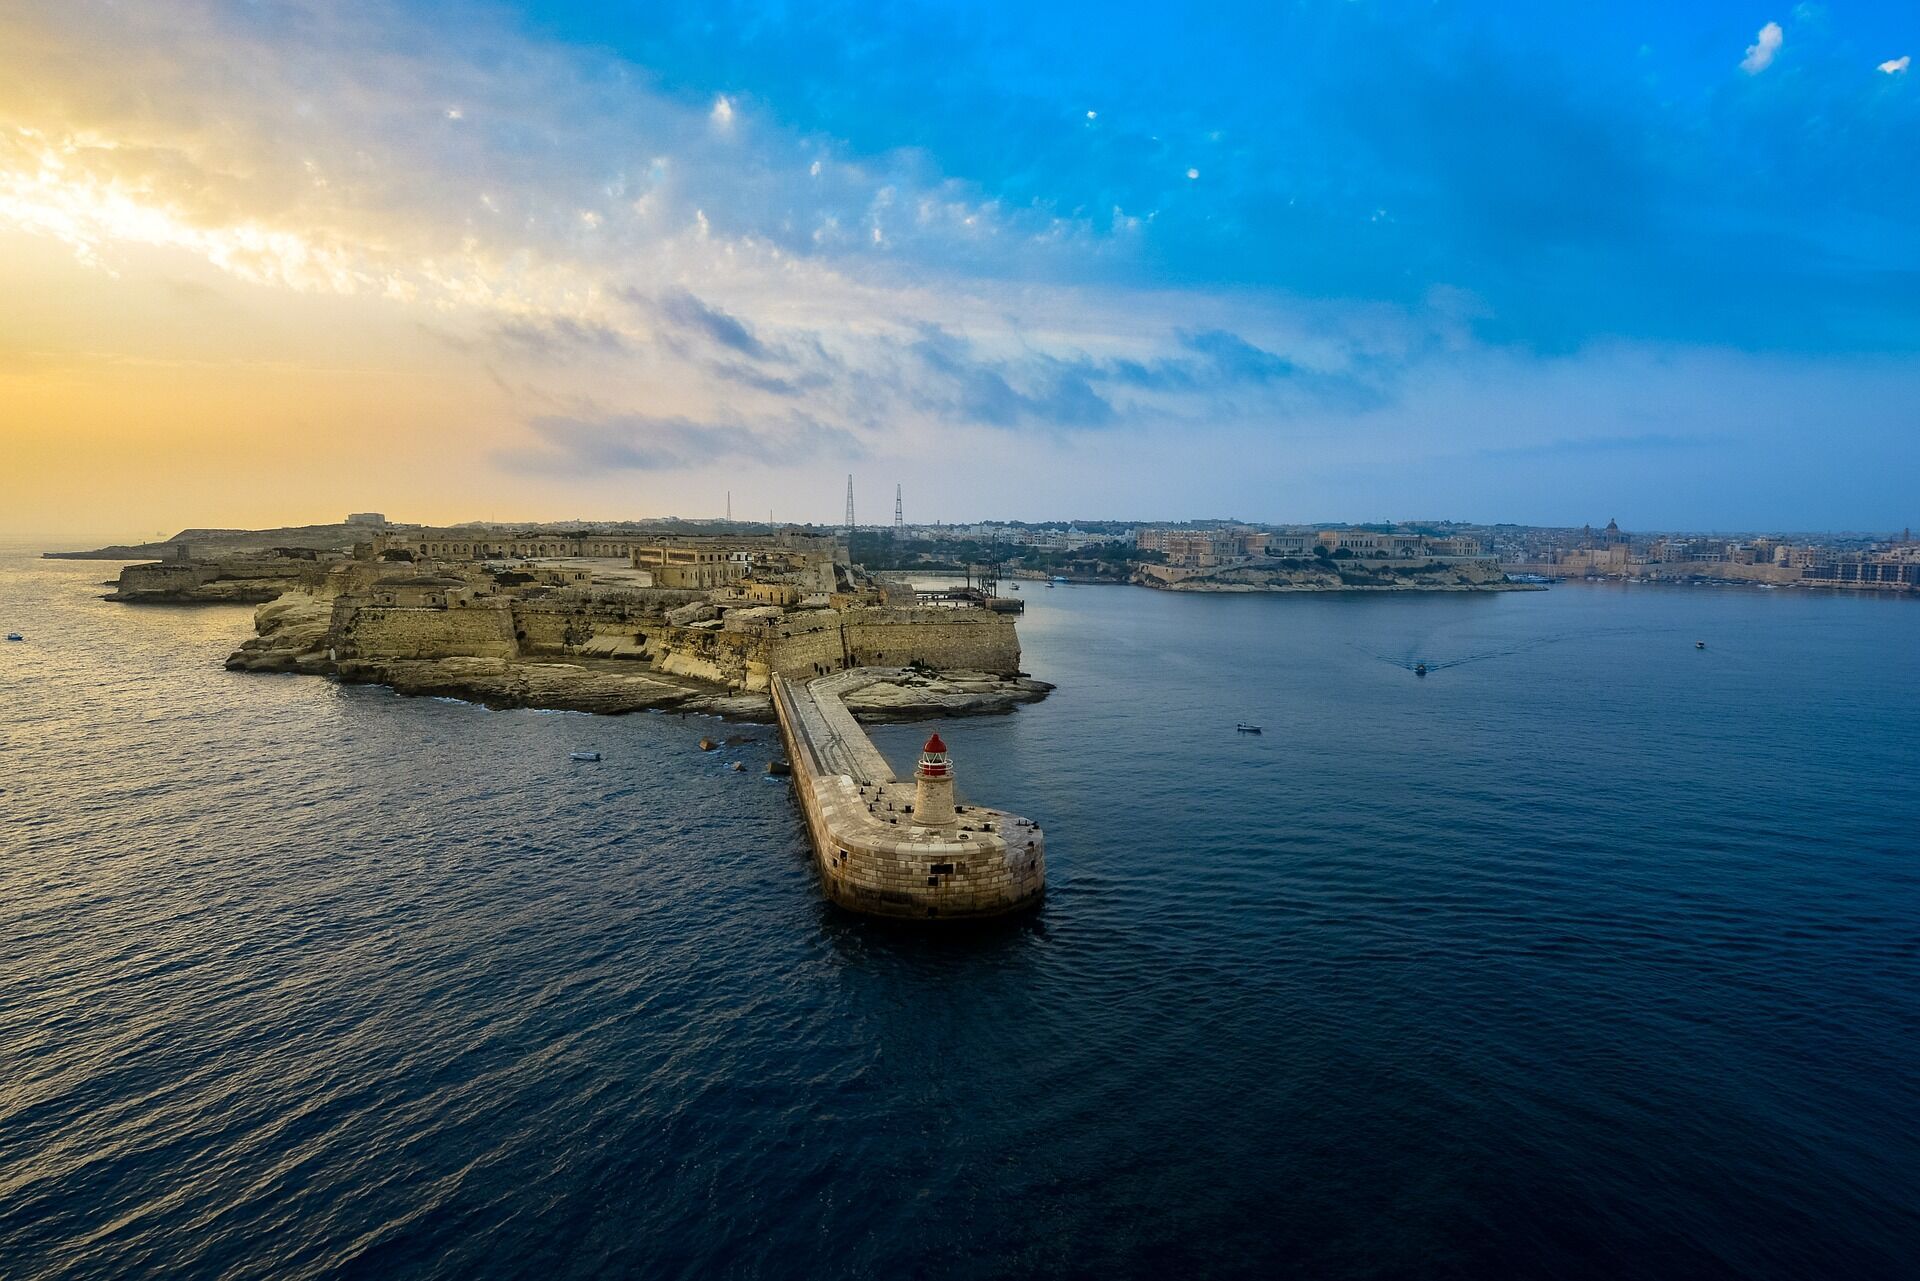 Цены на Мальте зимой значительно падают.